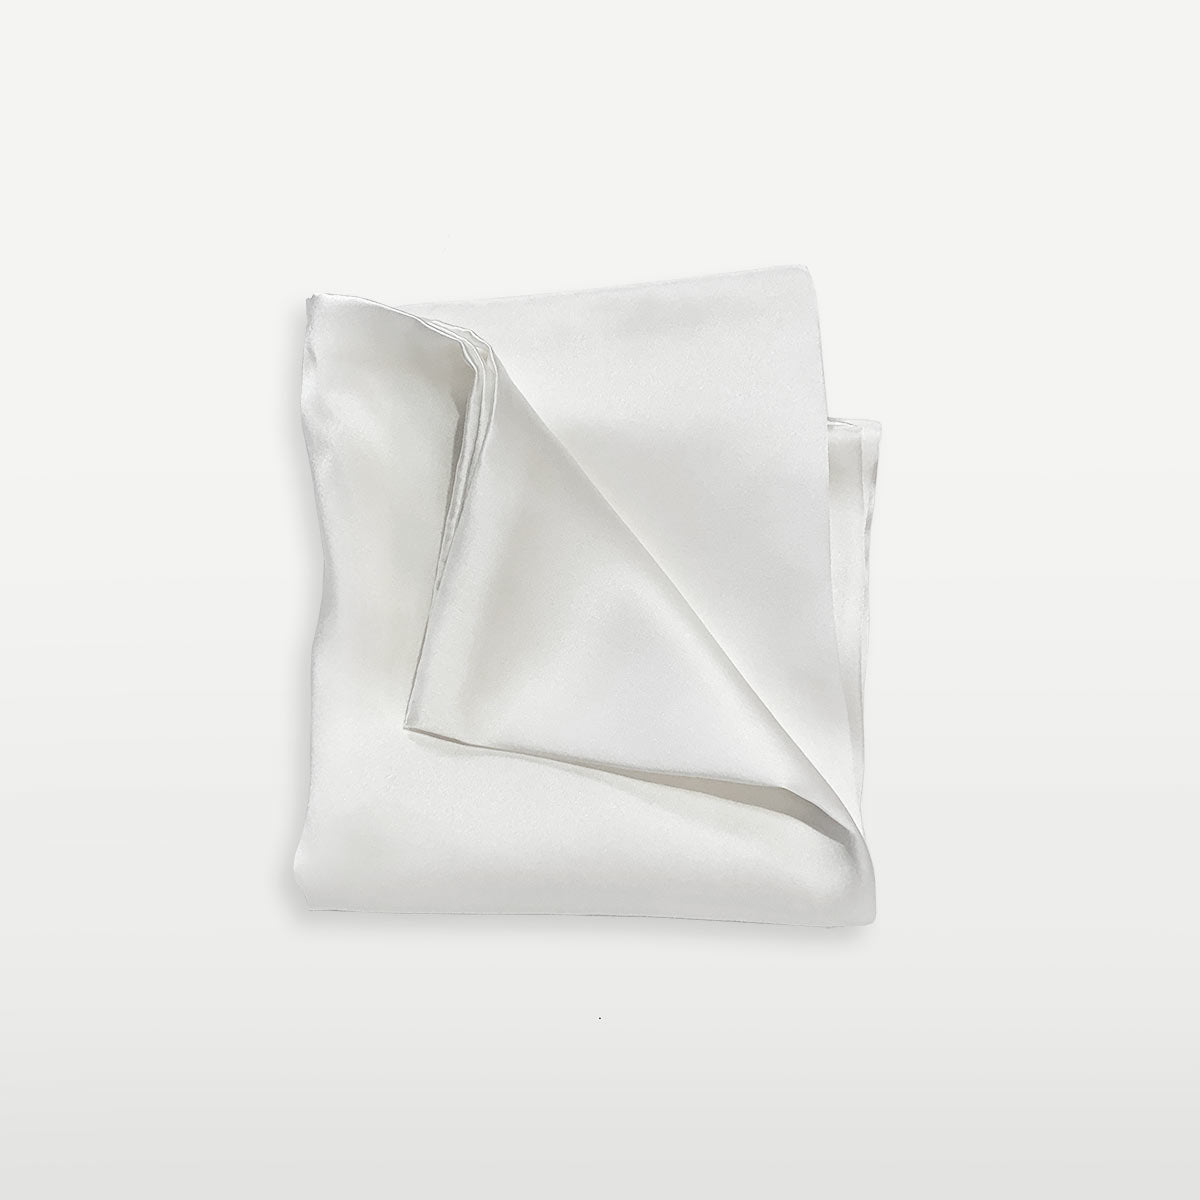 Toddler Pillowcase - Silk